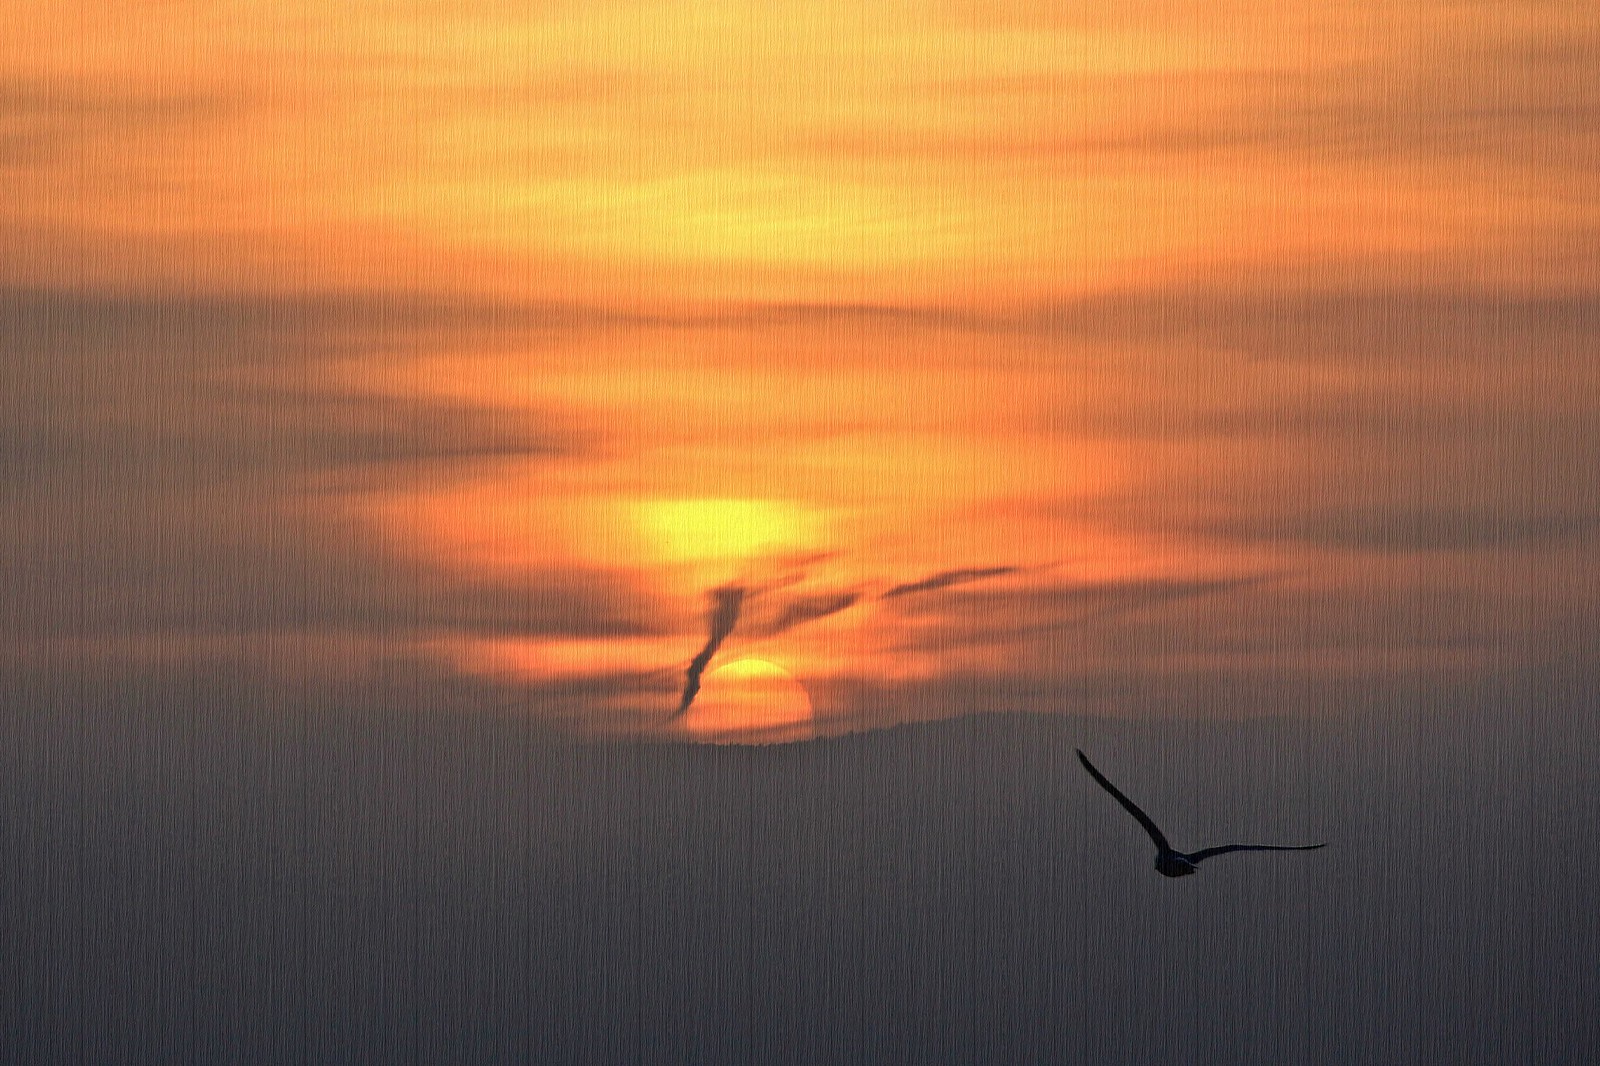 #sunrise #seagull #clouds